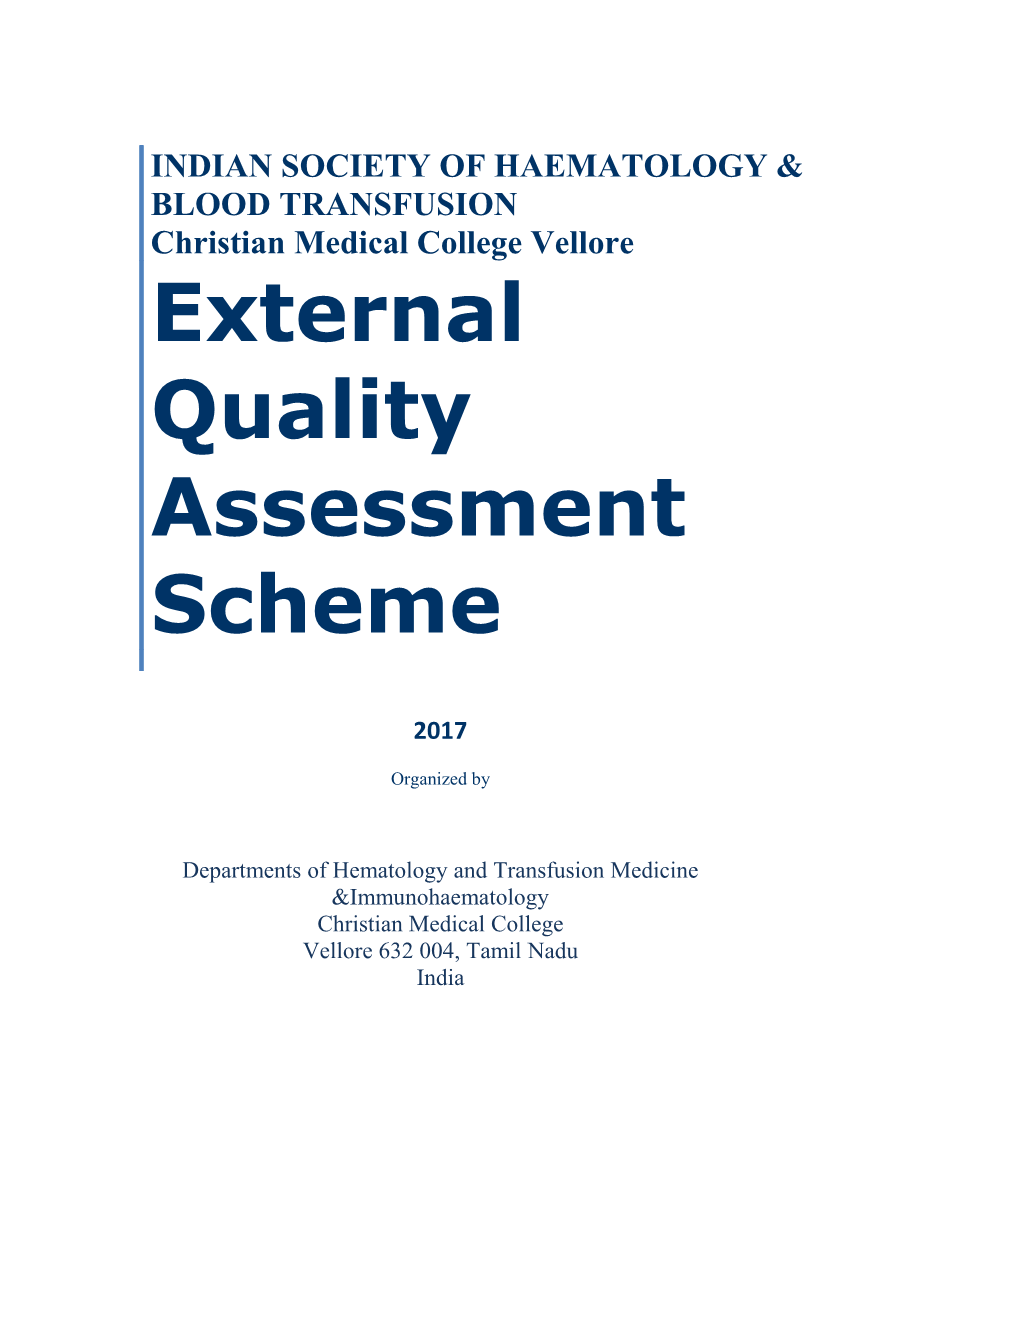 External Quality Assessment Scheme